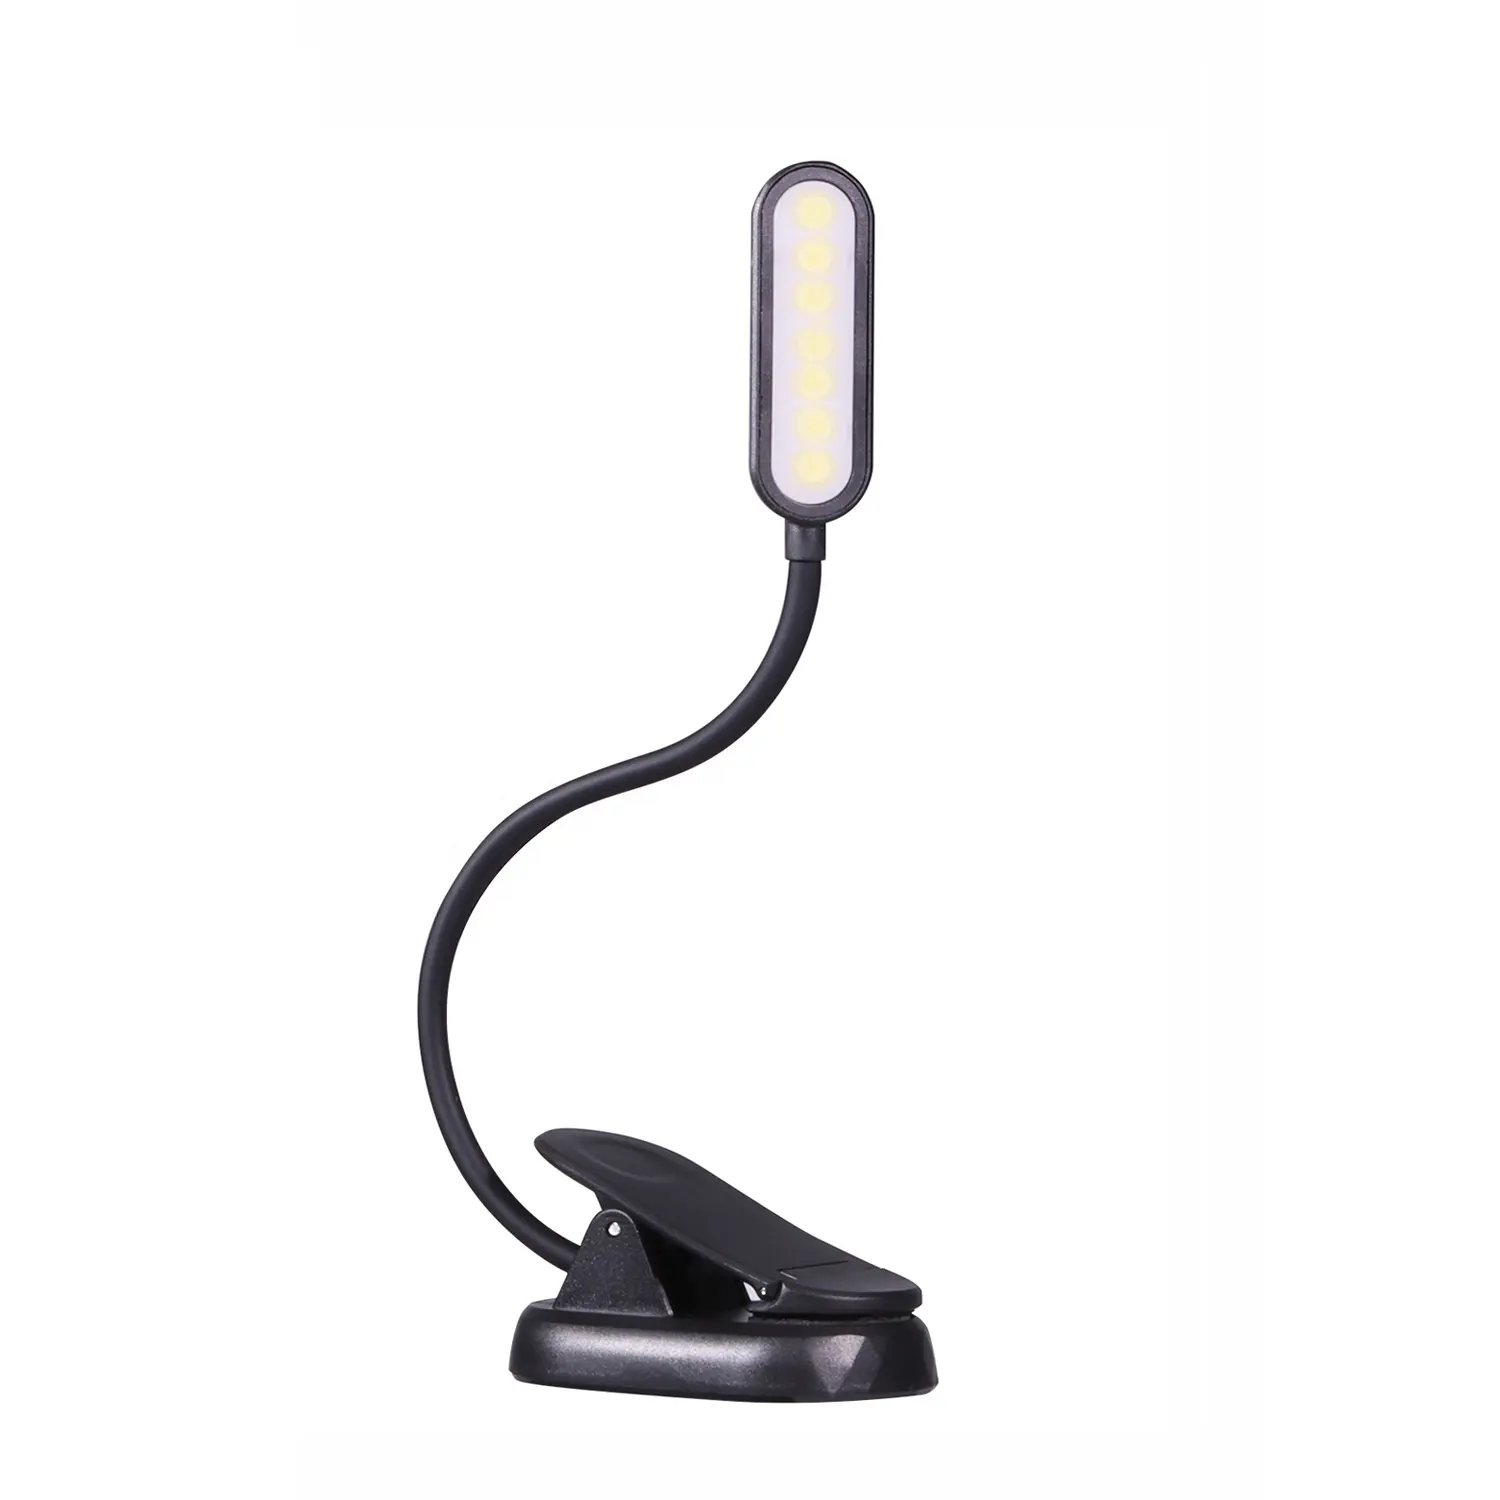 Yarrae новый дизайн, 7 светодиодов, фонарь для чтения с зажимом, 1600K, теплые светодиоды, фонари для чтения и сна